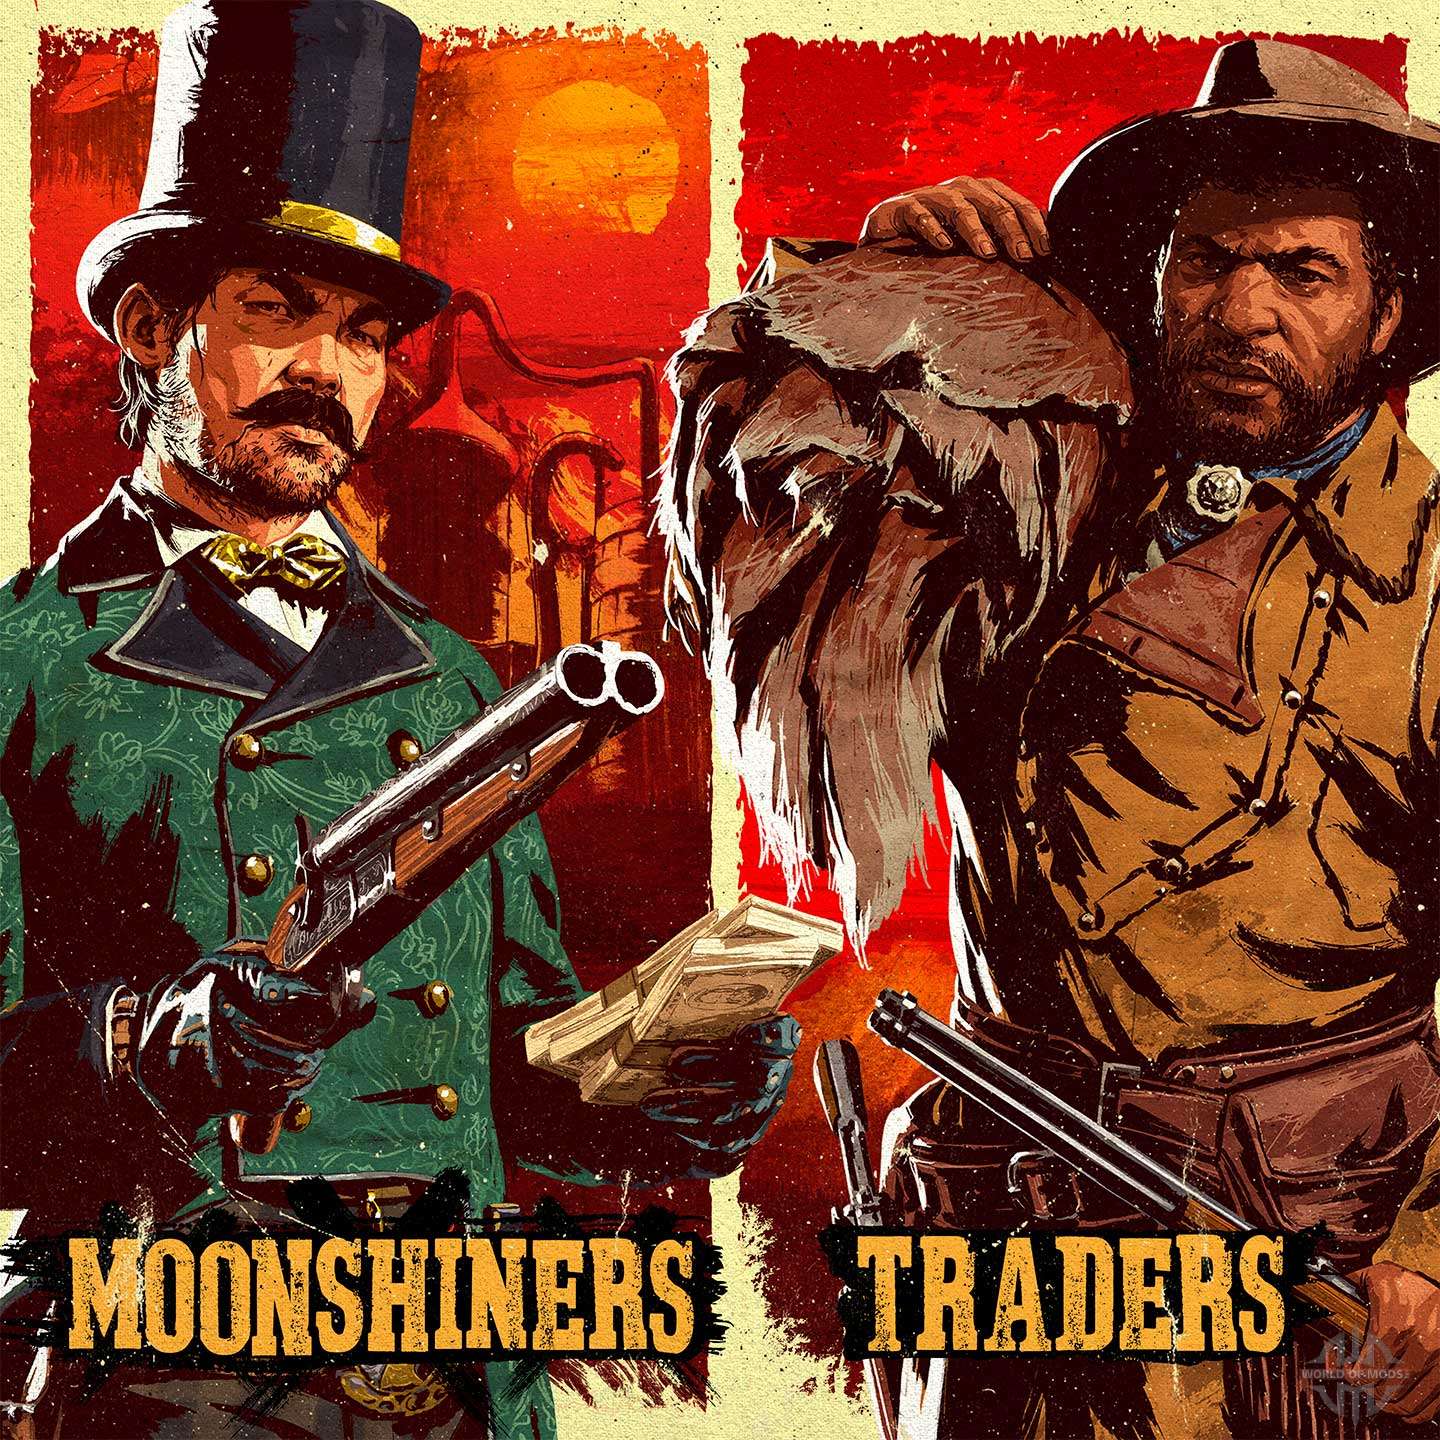 Traders et moonshiners dans Red Dead Online